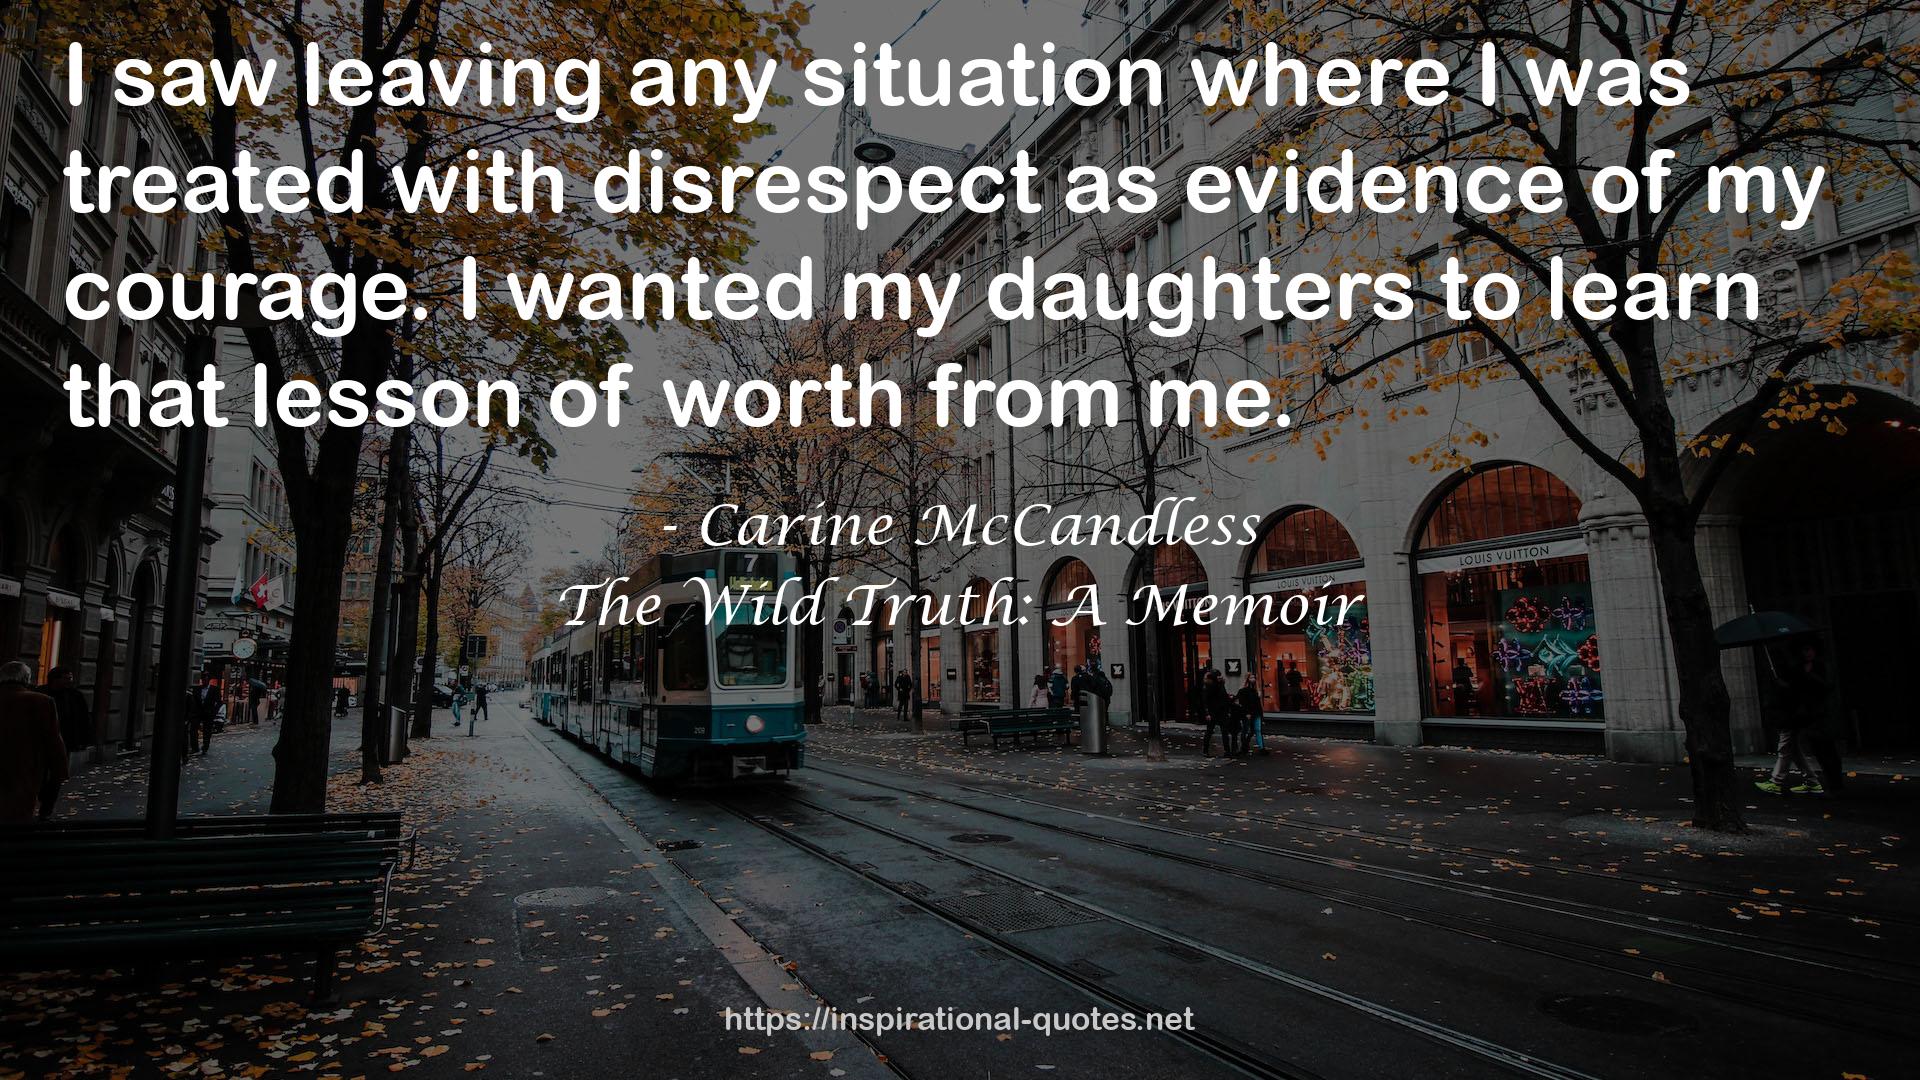 Carine McCandless QUOTES